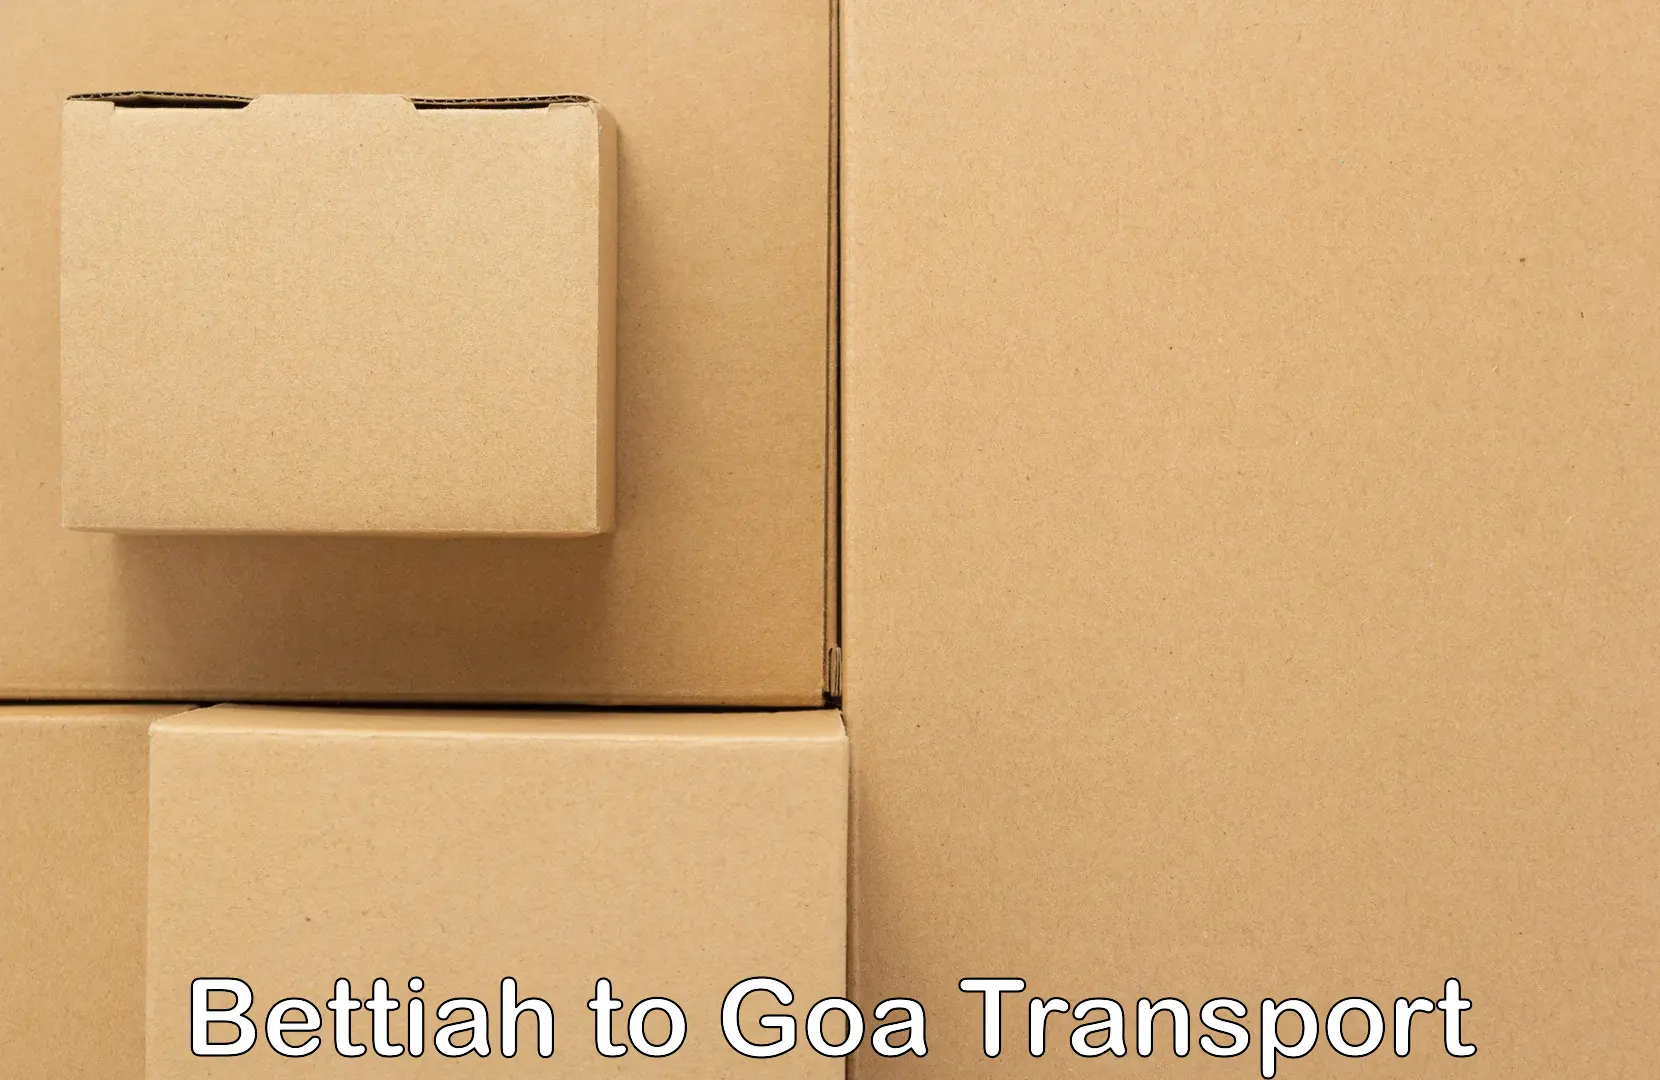 Express transport services Bettiah to IIT Goa